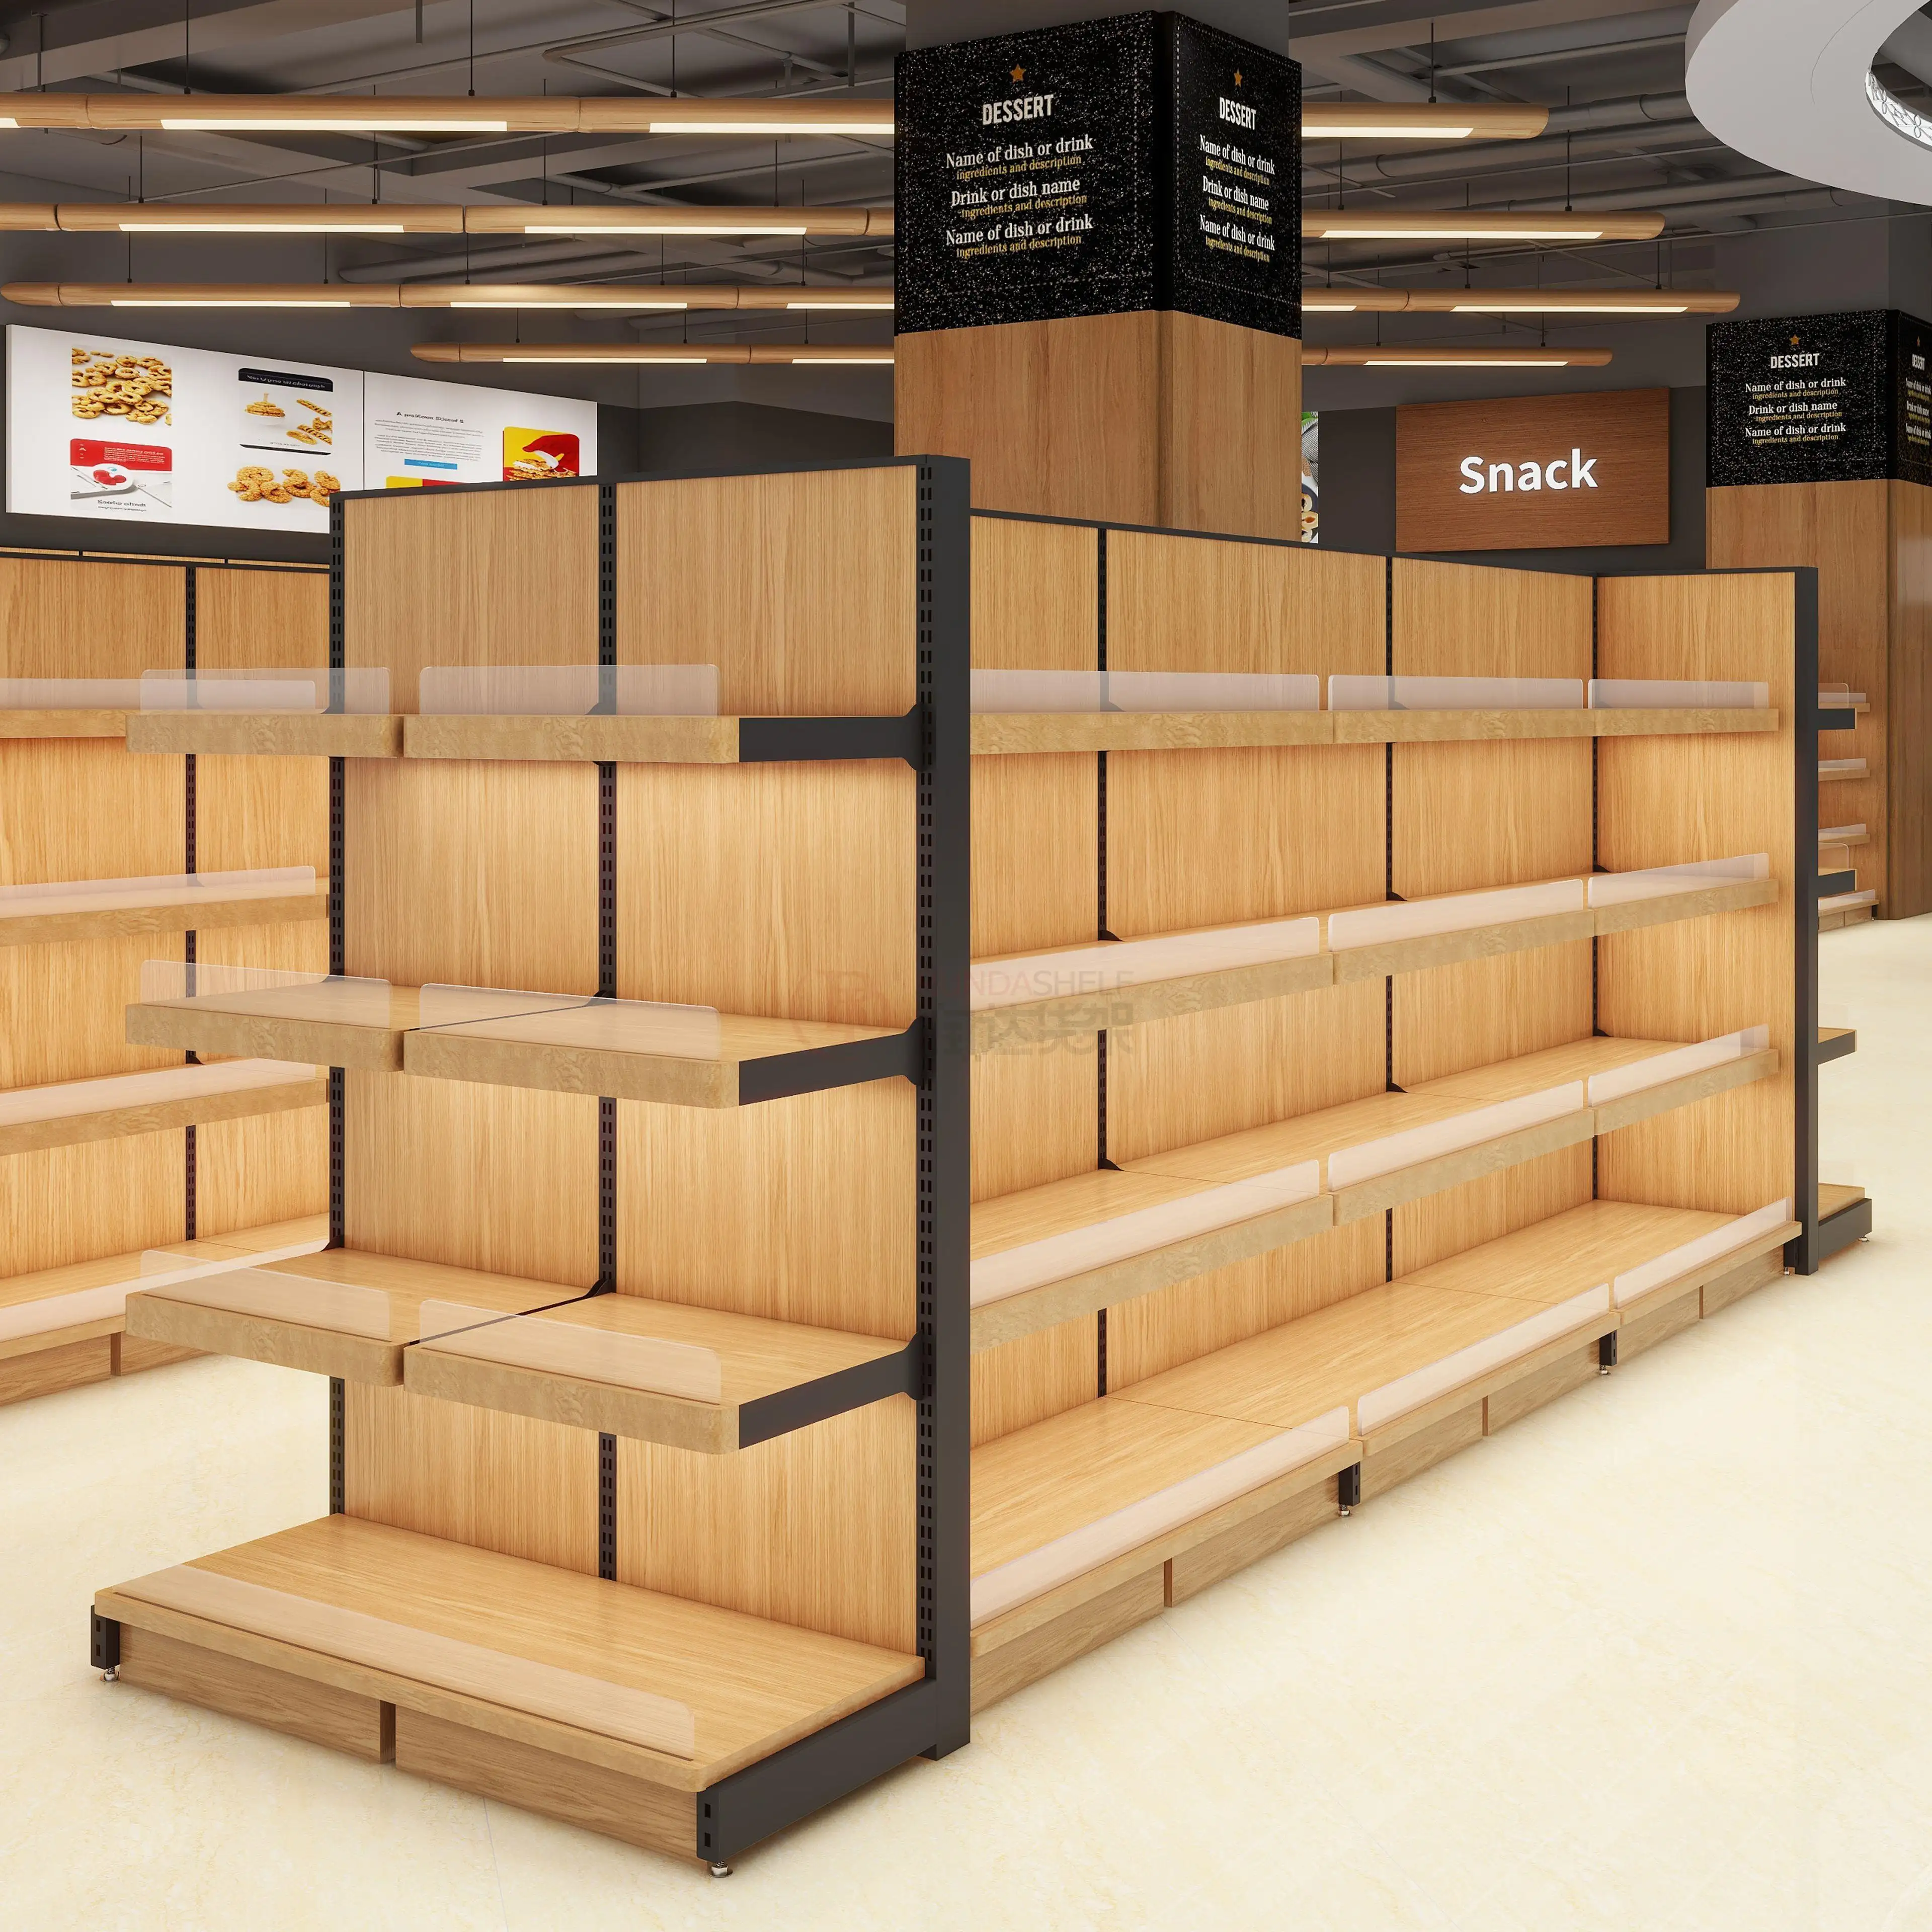 अनुकूलन योग्य गोंडोला शेल्फ और सुपरमार्केट शेल्फ लकड़ी की दीवार खुदरा स्टोर शेल्फ उच्च गुणवत्ता वाला भारी कोरोंडा-लुढ़का इस्पात